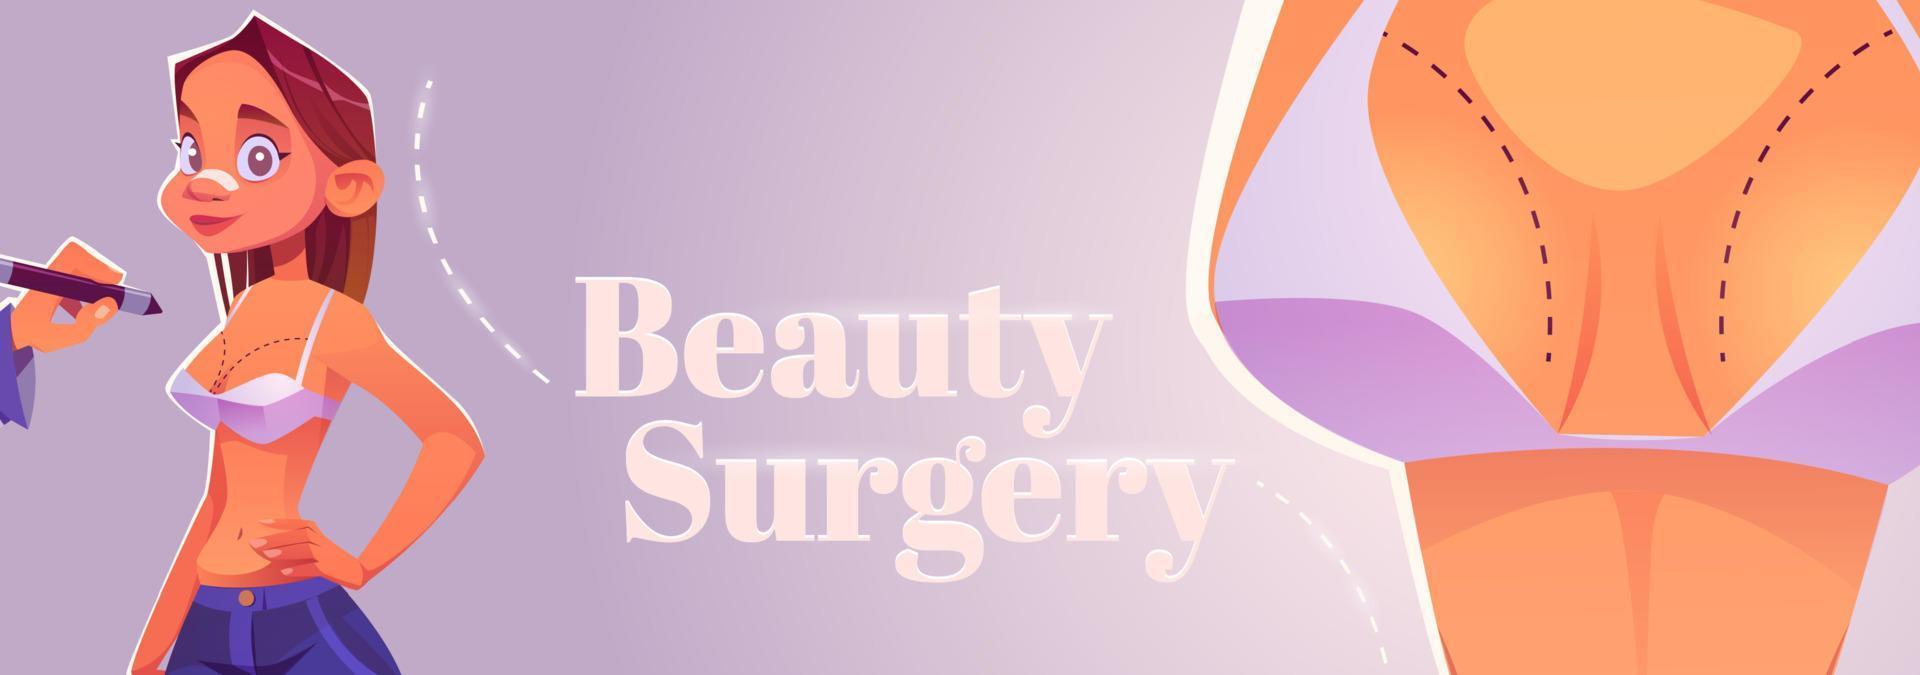 Cartoon-Banner für Schönheitsoperationen, Kosmetikverfahren vektor